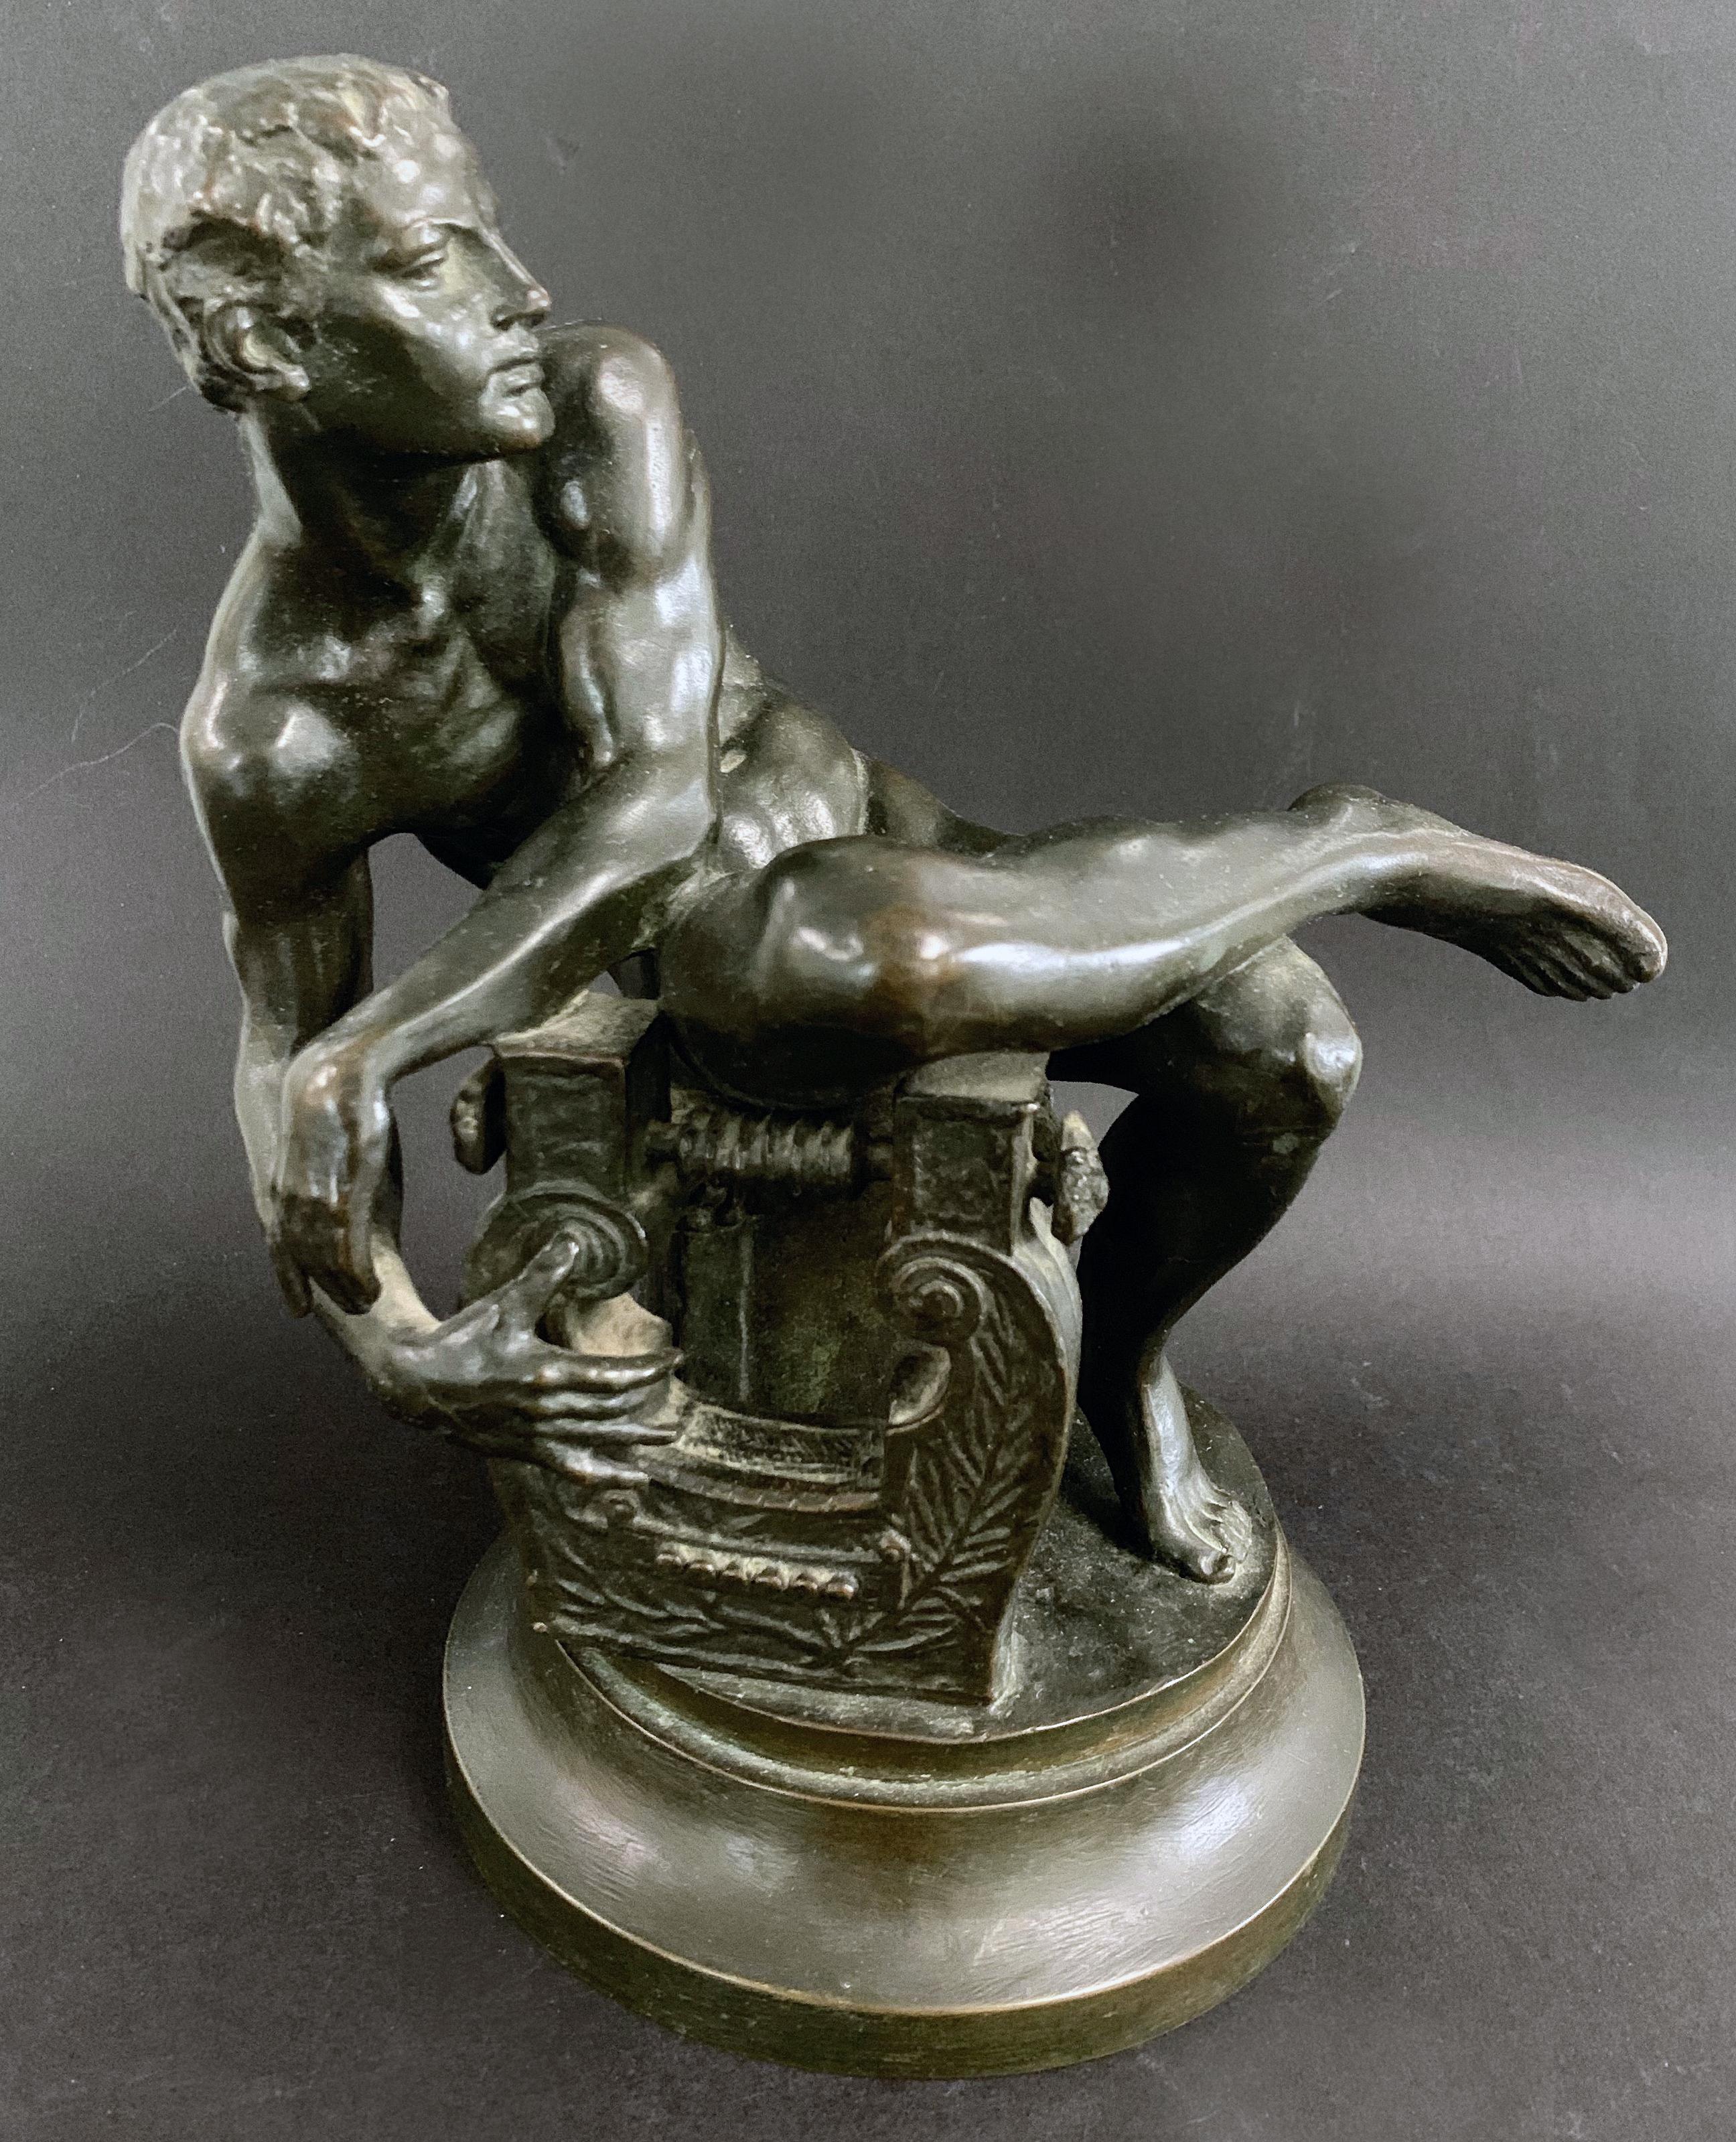 Diese meisterhaft konzipierte und ausgeführte Bronzeskulptur stellt einen jungen männlichen Akt dar, der sich nach rechts dreht, um die Saiten seiner Leier zu zupfen. Vielleicht eine Anspielung auf Orpheus, der in der Lage war, alle Lebewesen zu